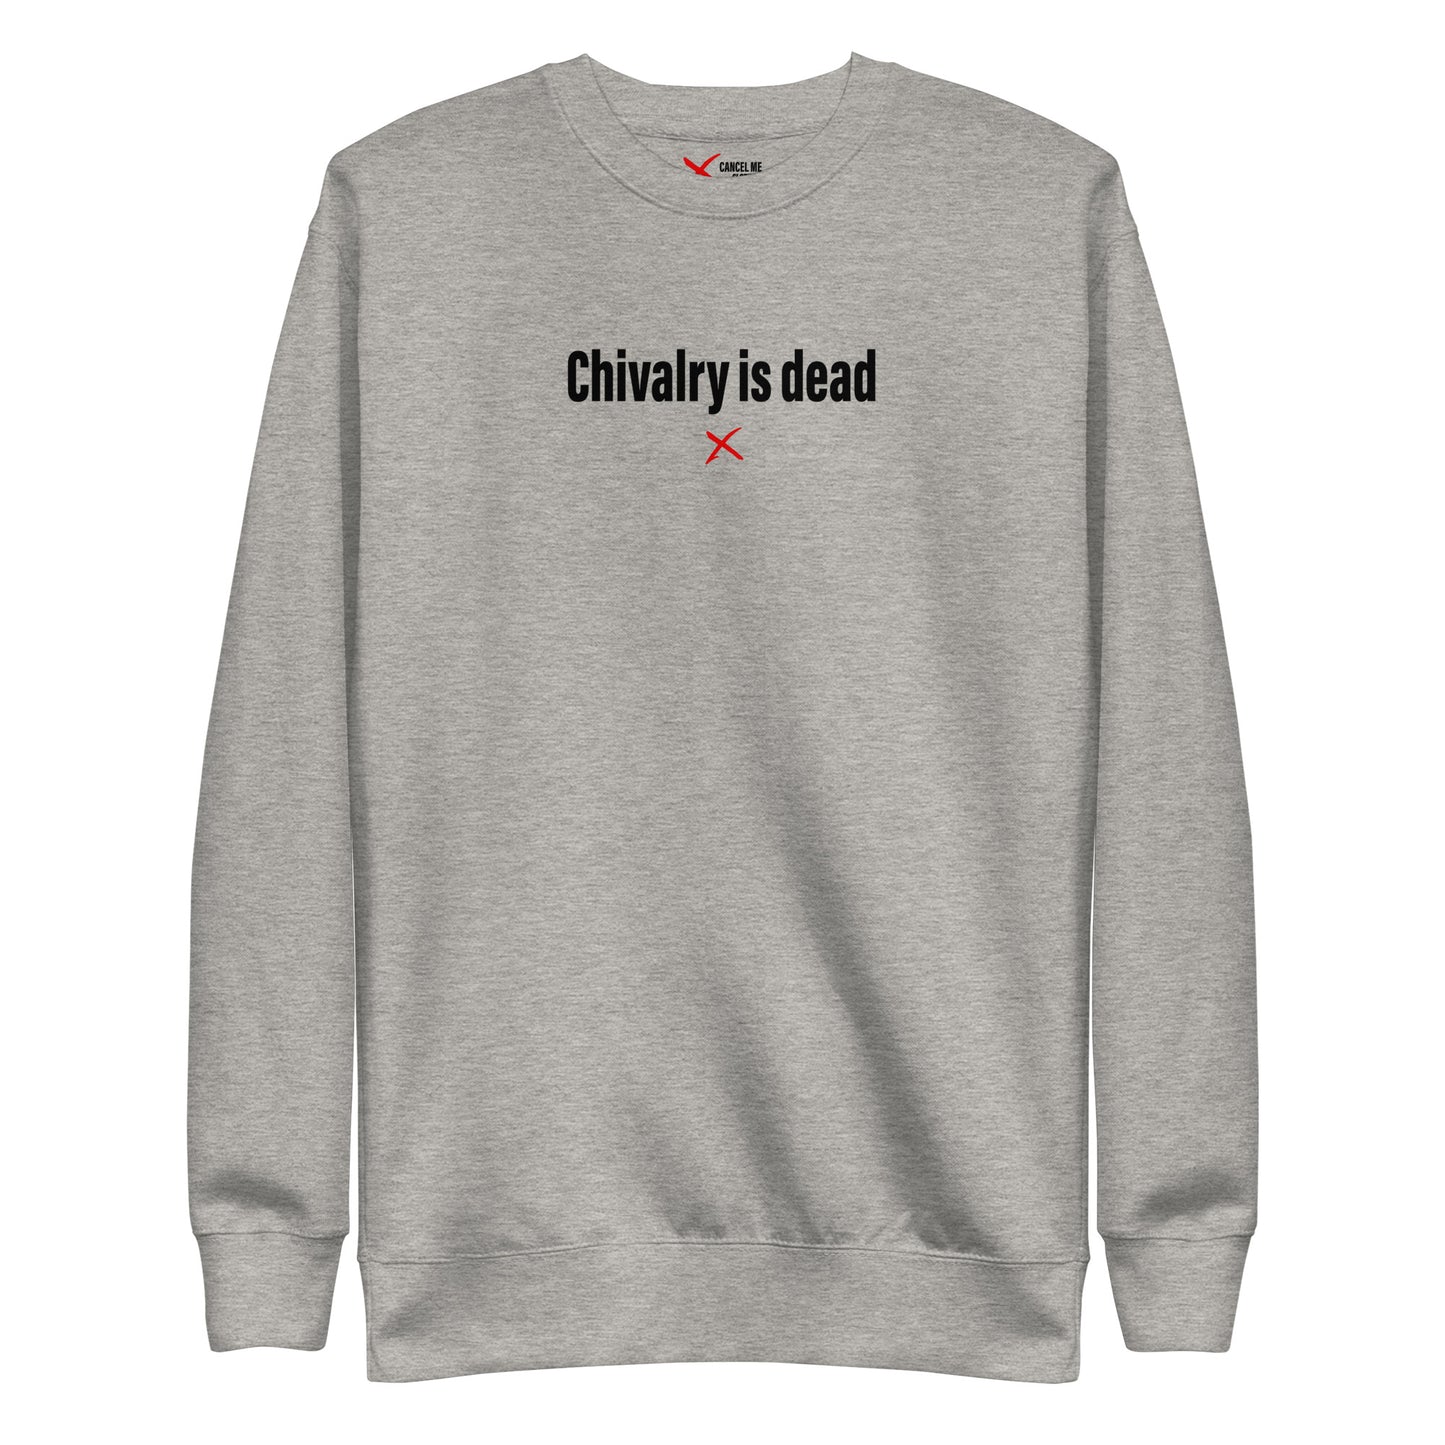 Chivalry is dead - Sweatshirt